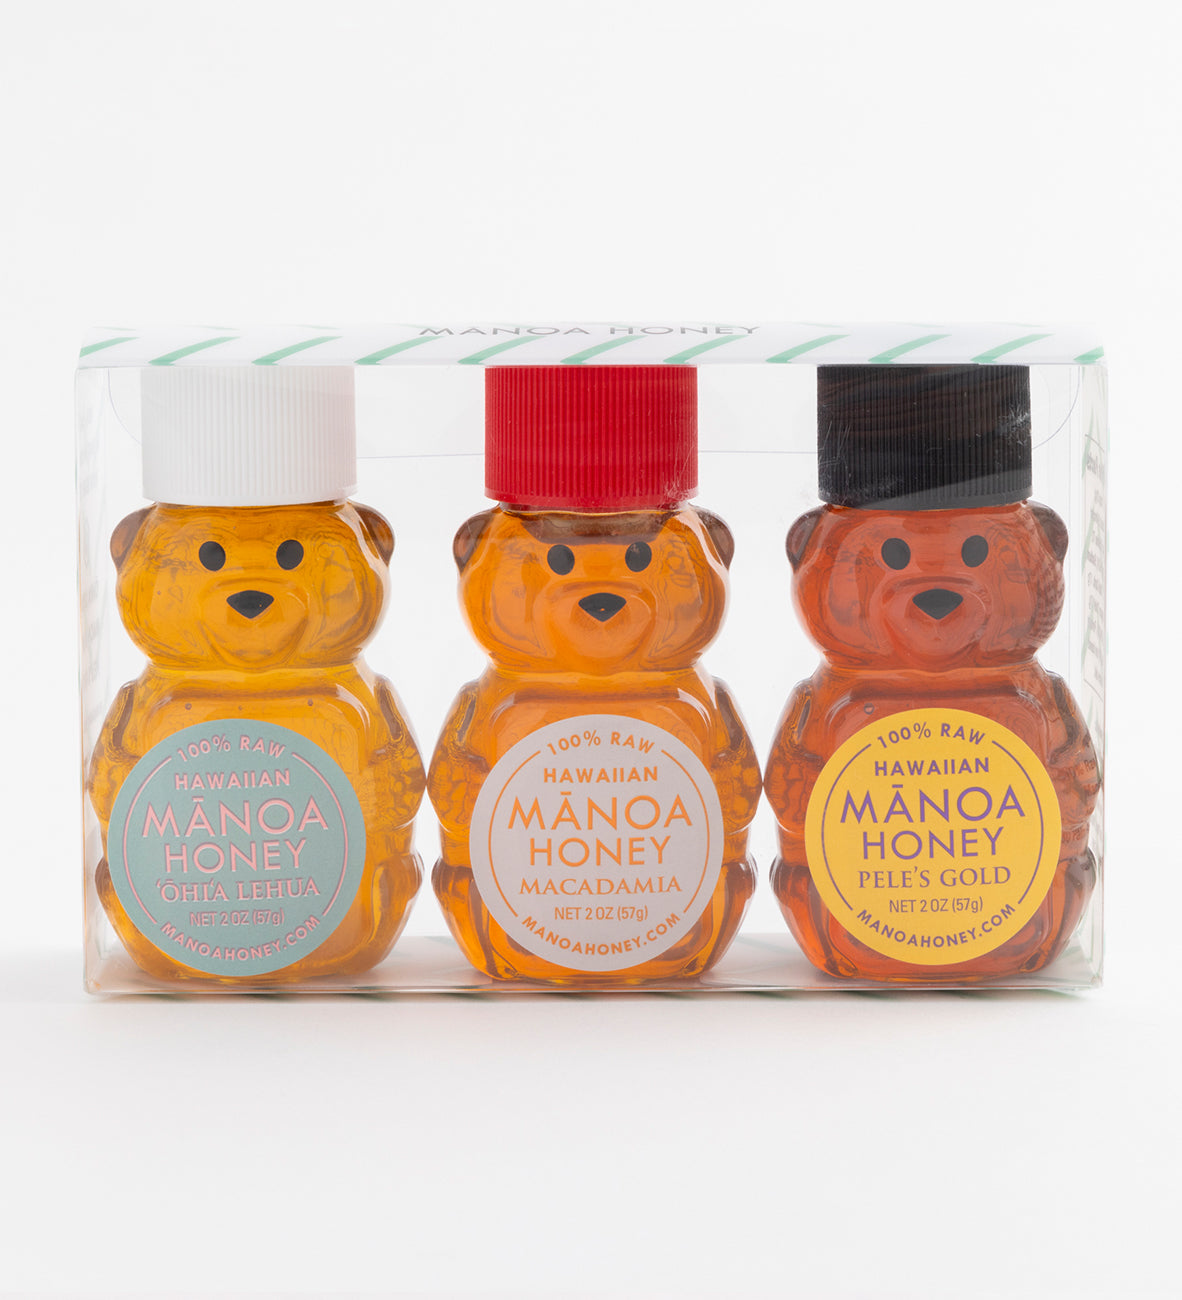 Manoa Honey（マノアハニー）ベアートリオセット (2oz x 3)